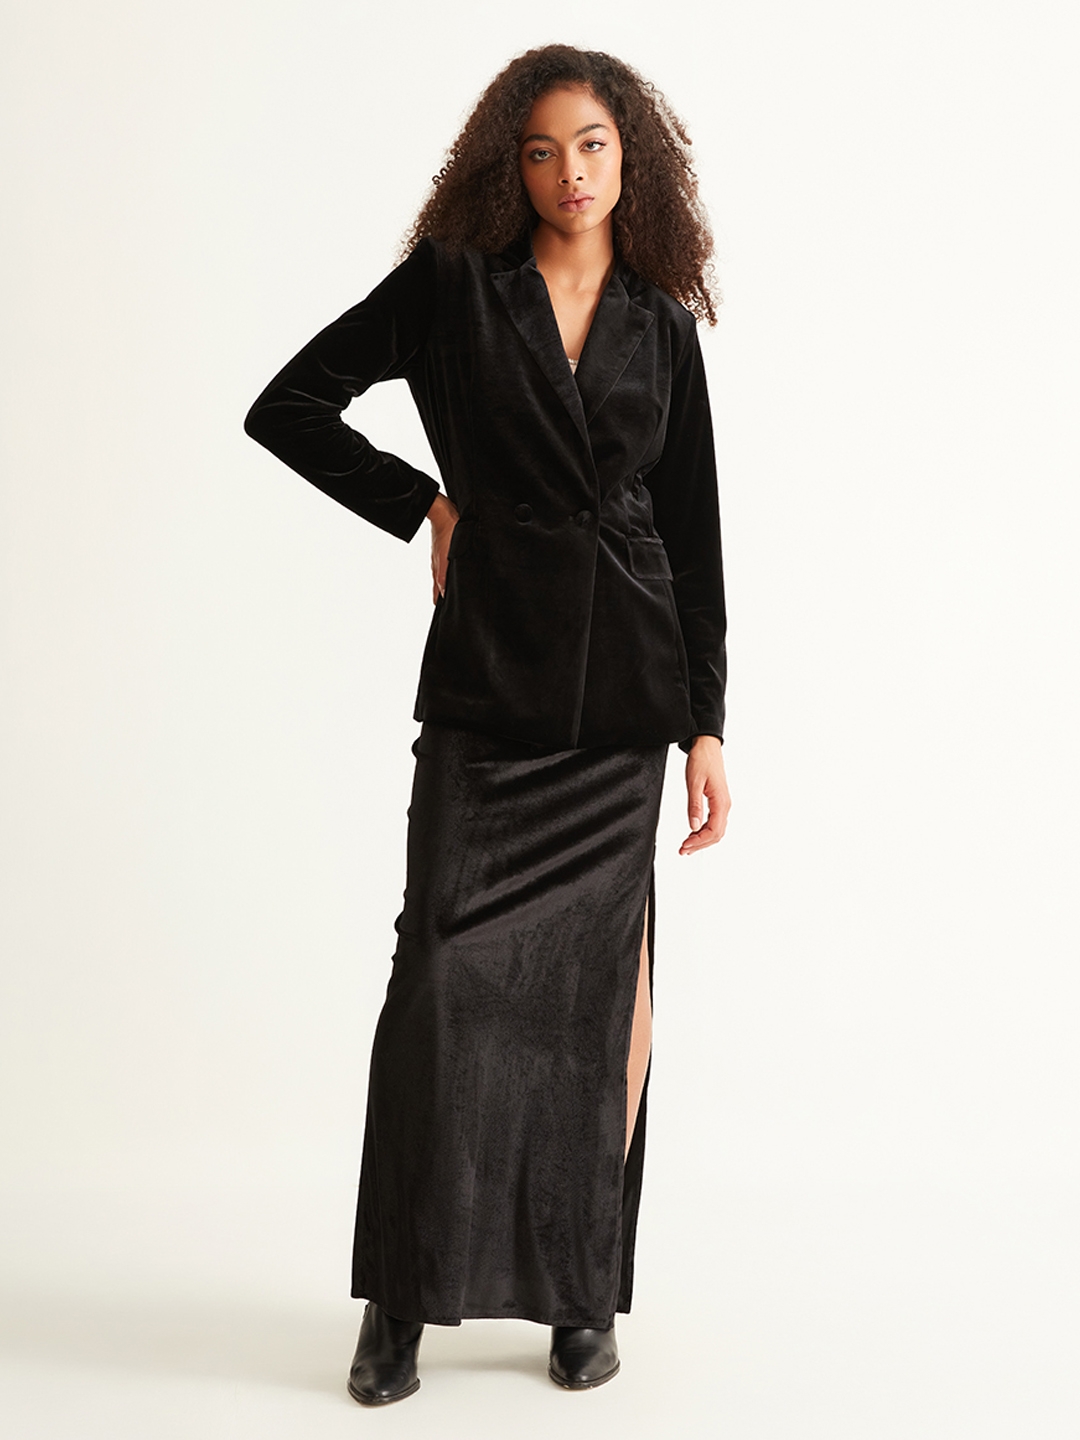 BACKORDER - Evelyn High Waist Velvet Skirt In Black | I.Silhouette